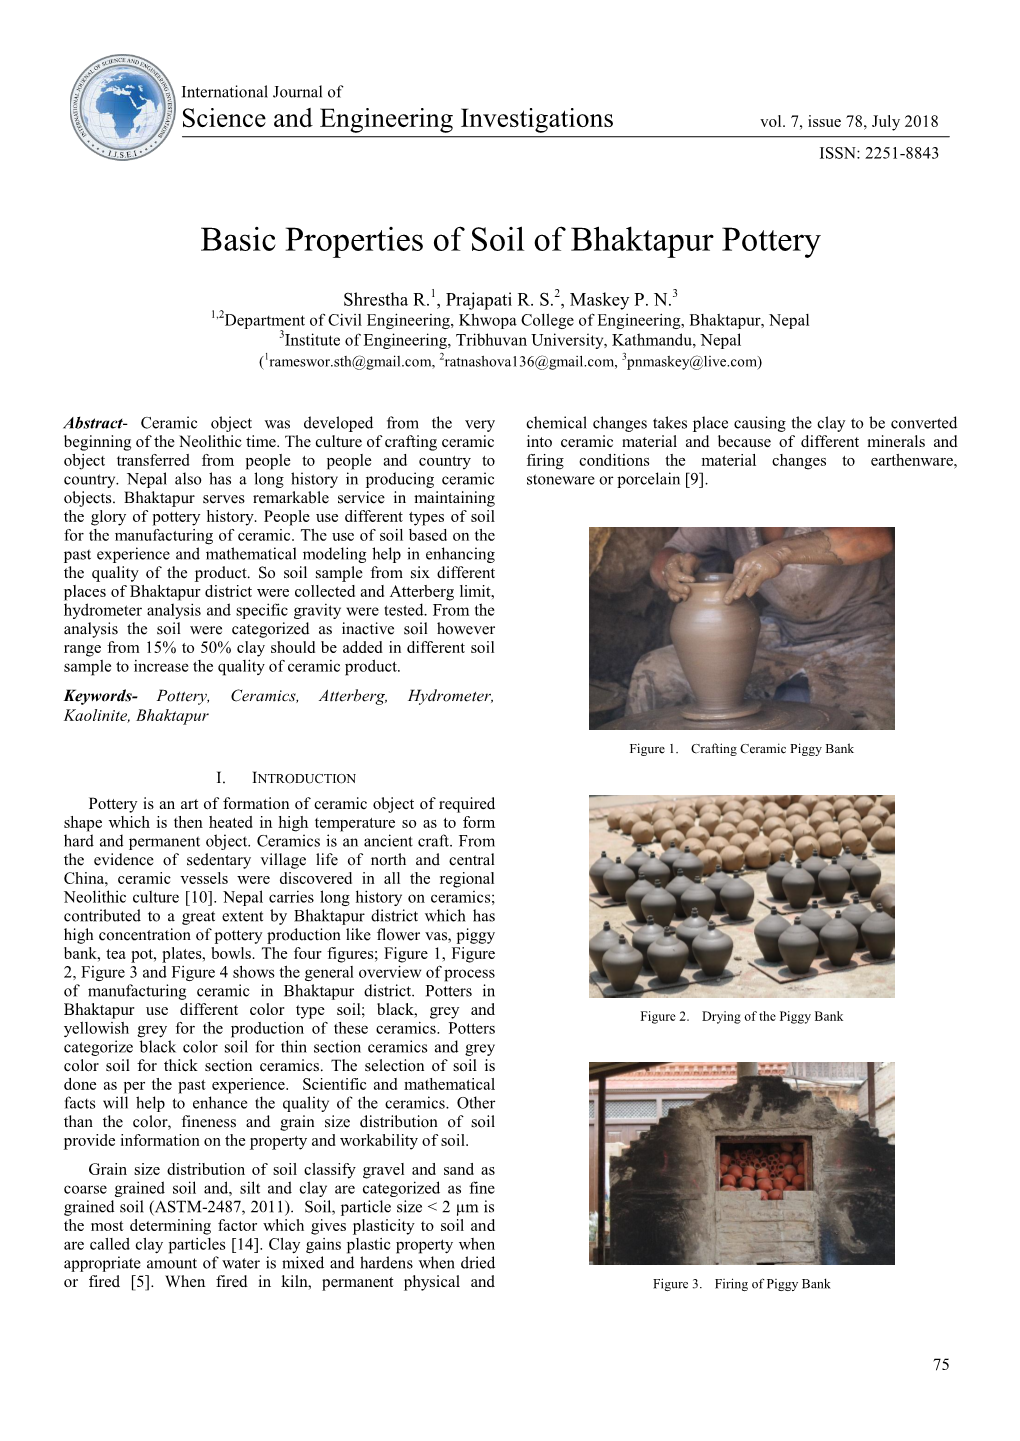 Basic Properties of Soil of Bhaktapur Pottery